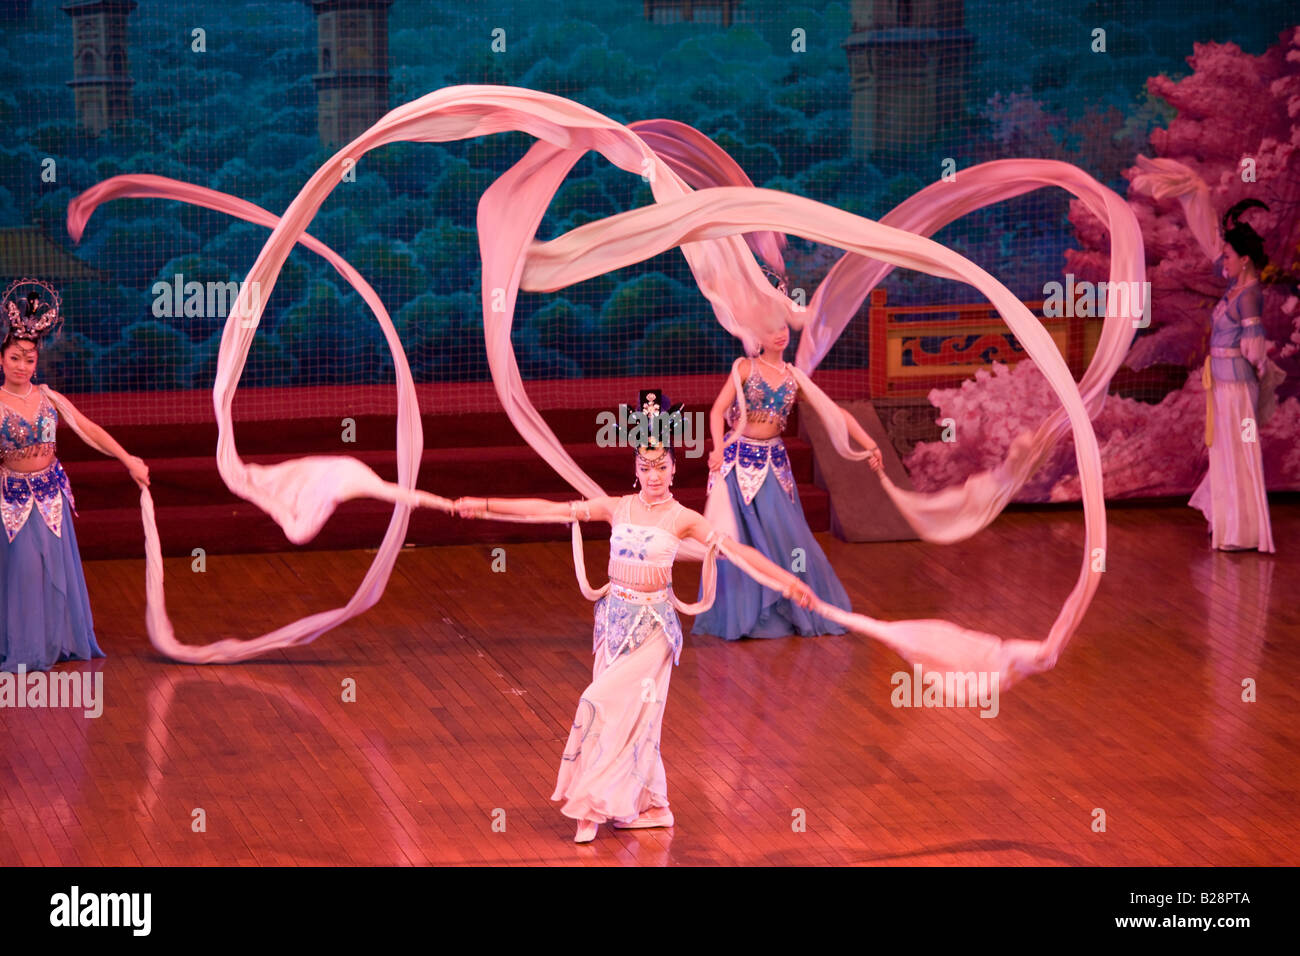 Danseurs aux foulards en soie dans le spectacle de danse Tang Grand Opera House de Shaanxi Xian Chine Banque D'Images